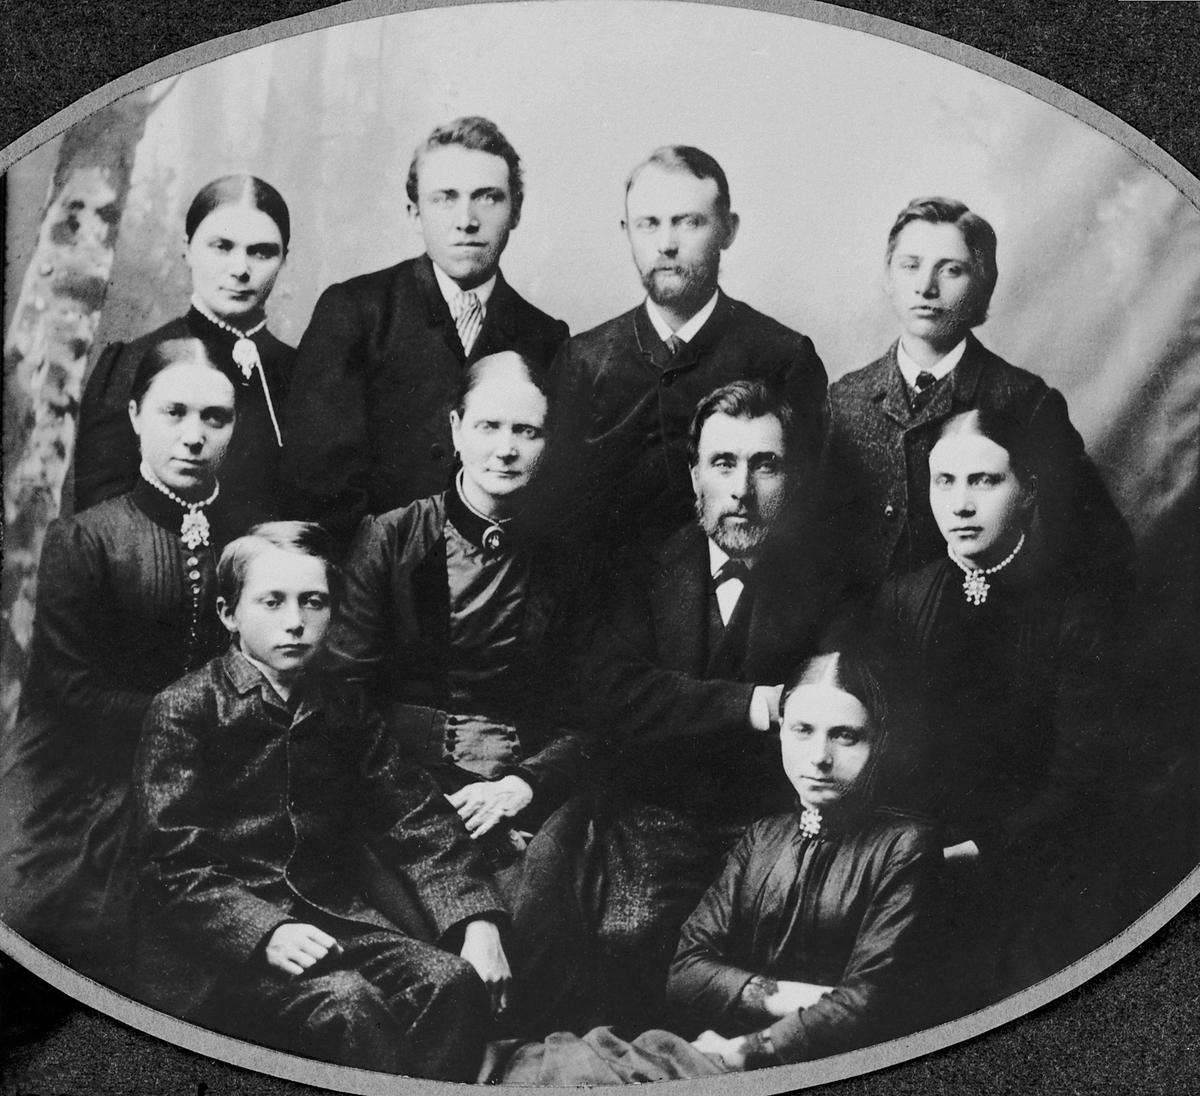 Familien på Sendstad, Nes, Hedmark. Mina (1833-1919) og Ole Sendstad (1827-1907) i midten med barna rundt. Otto Mauritz (1874-1965), Magnhild Barbro (1861-1935). Bak fra venstre er Anne Maria (Marie) (1865-1931), Ingvald (1867-1927), Olav (1859-1928), Aksel (1872-1922), 
Lena (1865-1940).